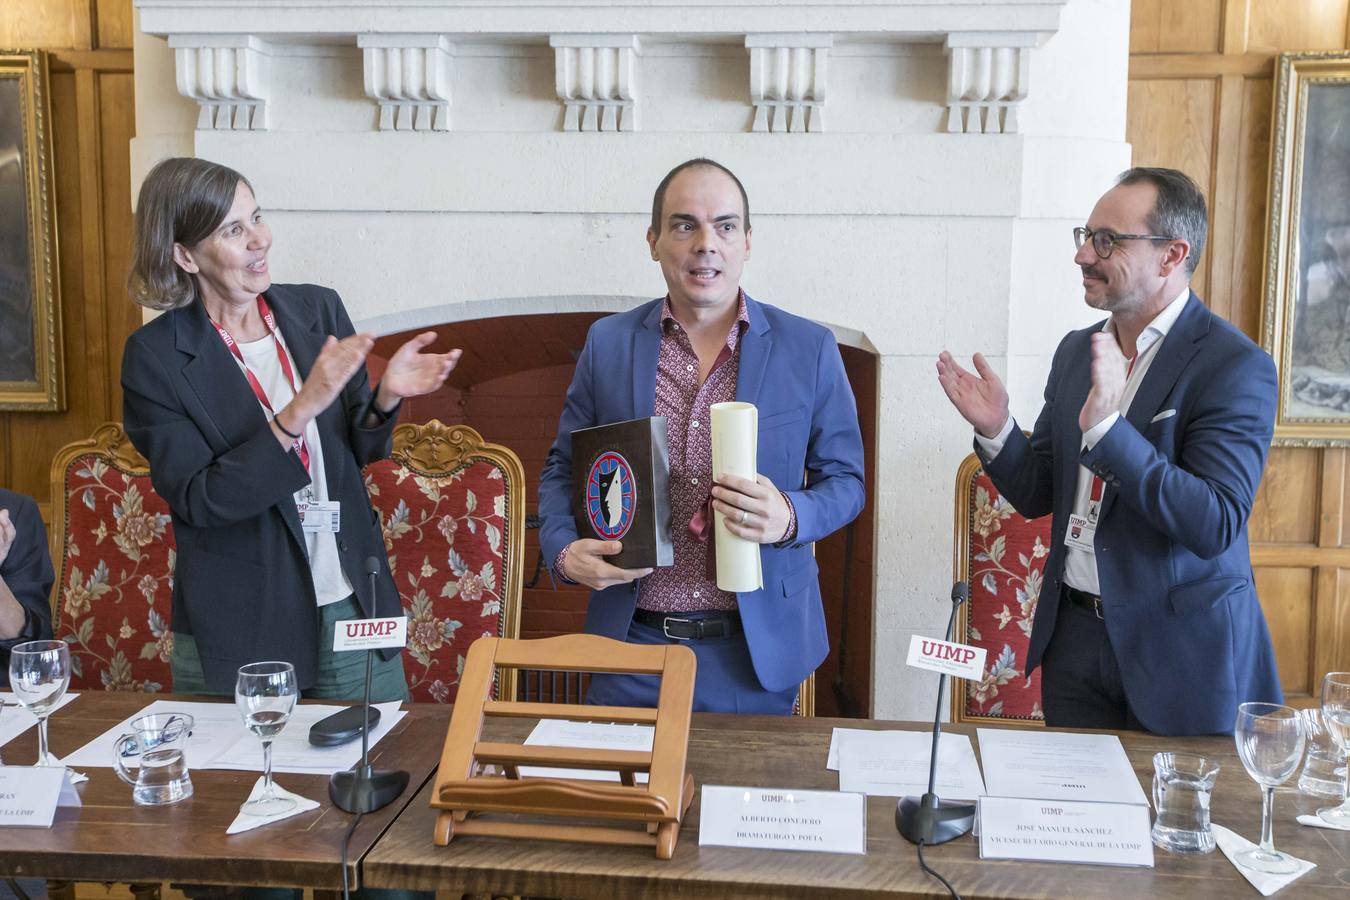 La Universidad Internacional Menéndez Pelayo ha entregado el XII Premio a las artes escénicas' al dramaturgo, quien ha dedicado el galardón recibido a los intérpretes. El acto ha tenido lugar en el Palacio de La Magdalena